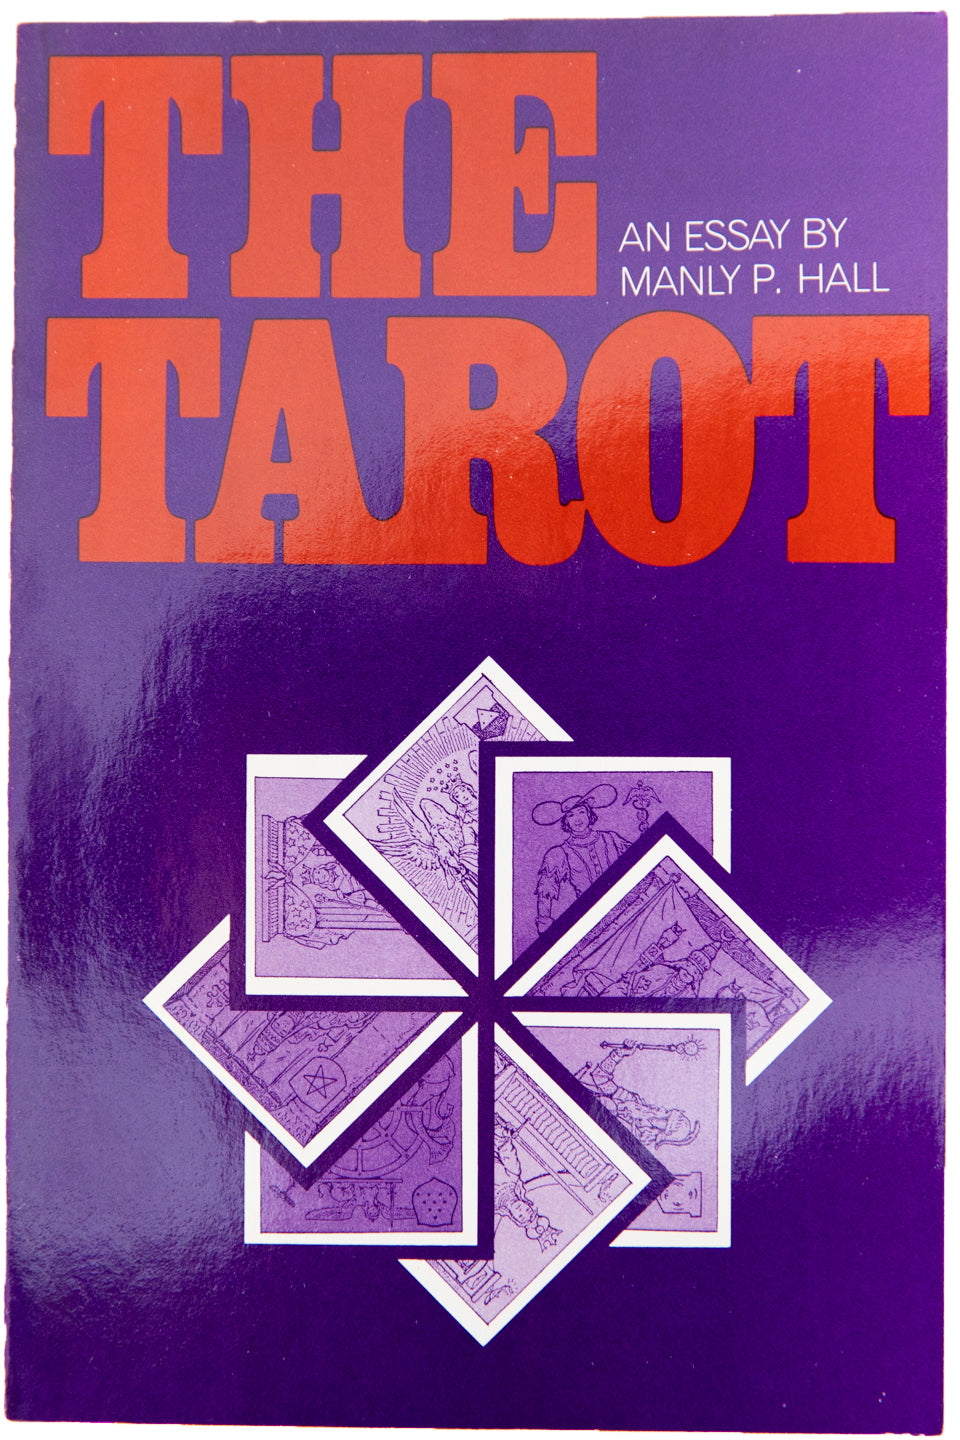 THE TAROT